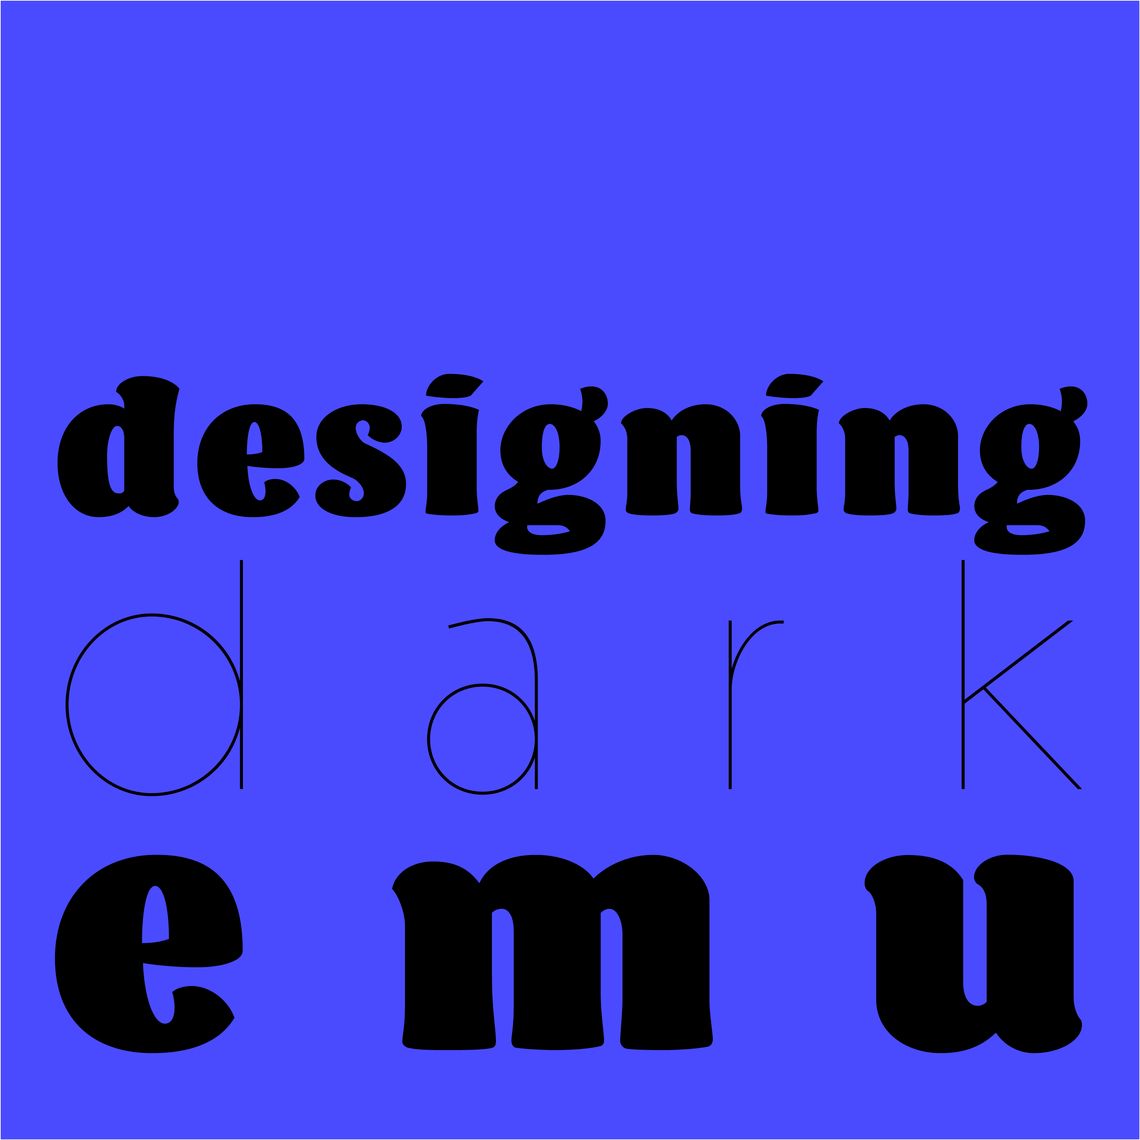 Designing Dark Emu